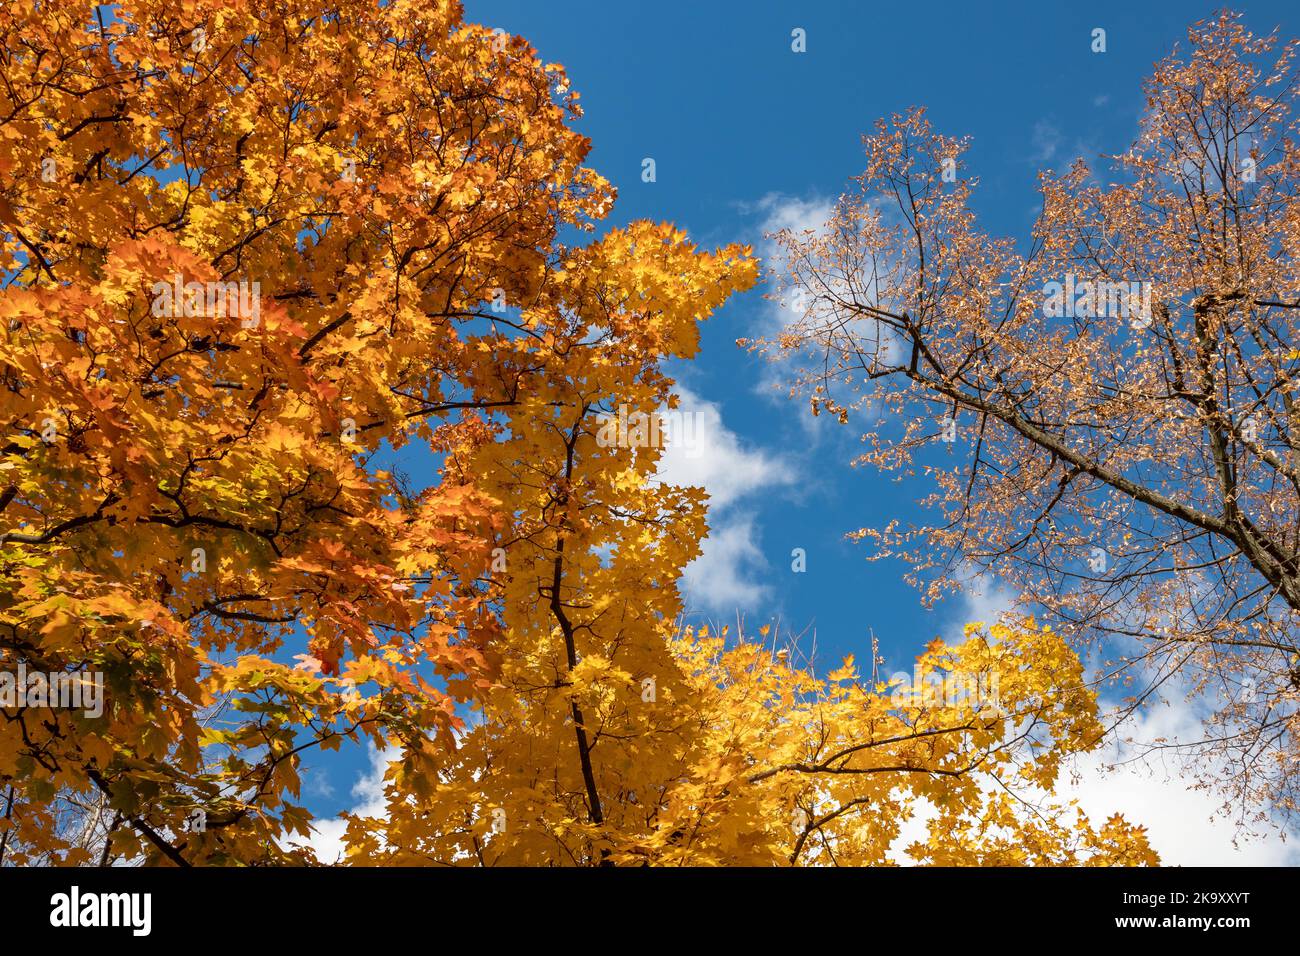 Saison d'or de l'automne. Branches d'érable avec des feuilles jaunes colorées sur le ciel bleu avec des nuages, fond naturel automnal de forêt Banque D'Images